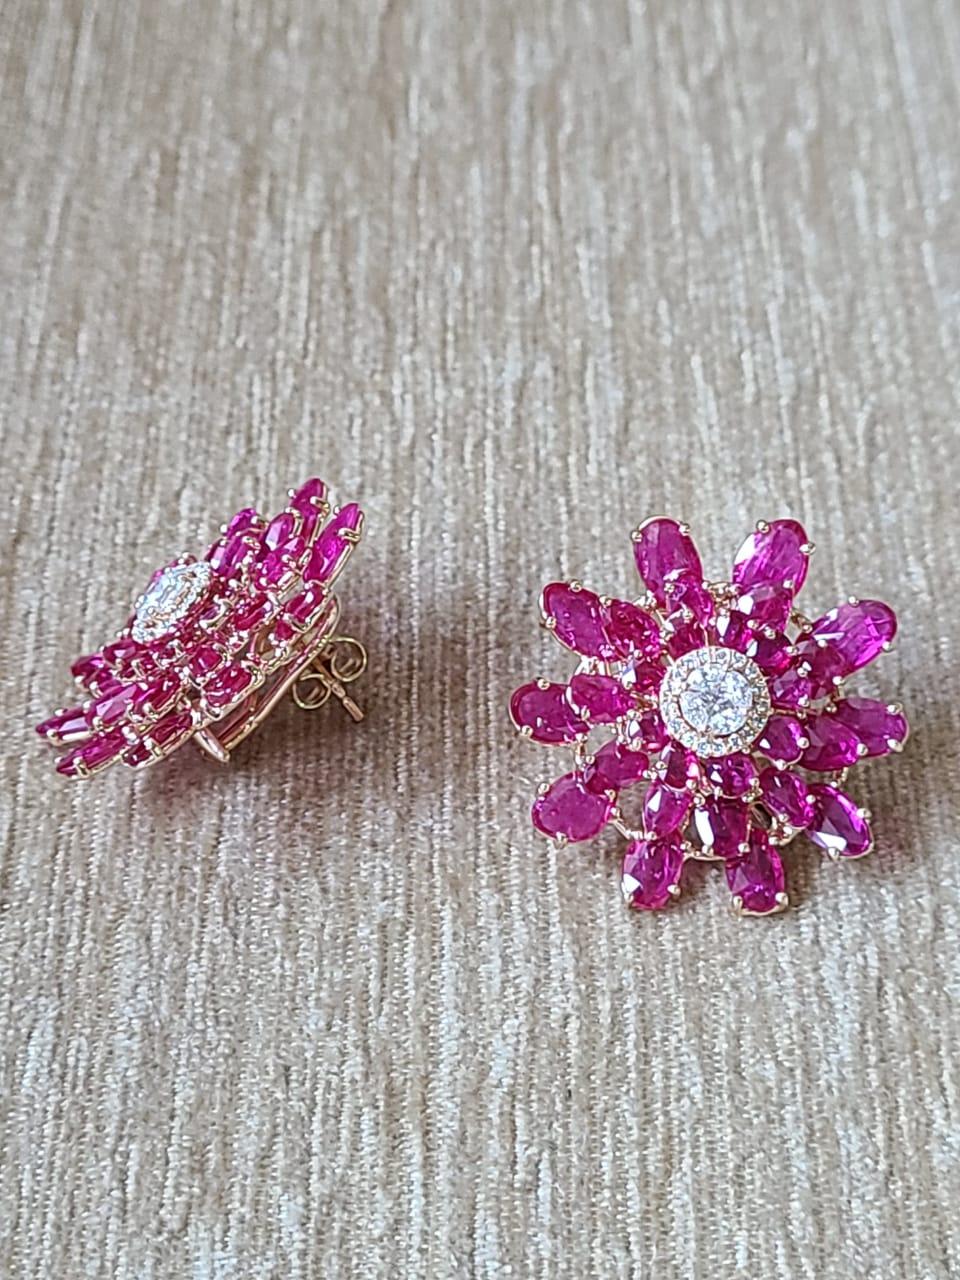 Round Cut Set in 18K Gold, Ruby & Diamonds Art Deco Style Stud Earrings